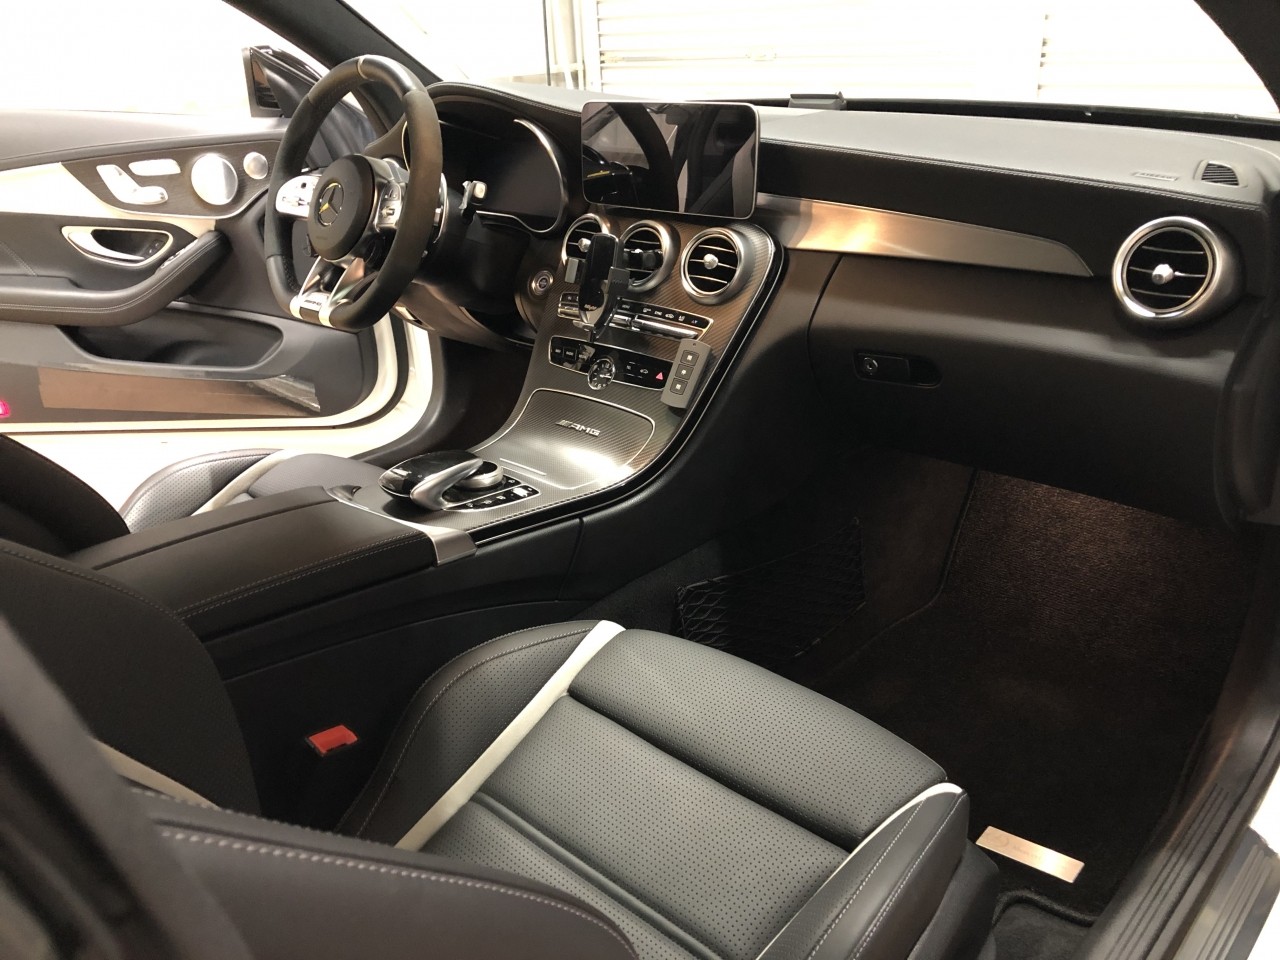 ご依頼作業 Mercedesbenz Amg C63s Coupe C5後期モデル 室内異音低減作業 その ブログ 自動車メーカー車両開発者が営む極上車専門店 Torino Cars トリノカーズ